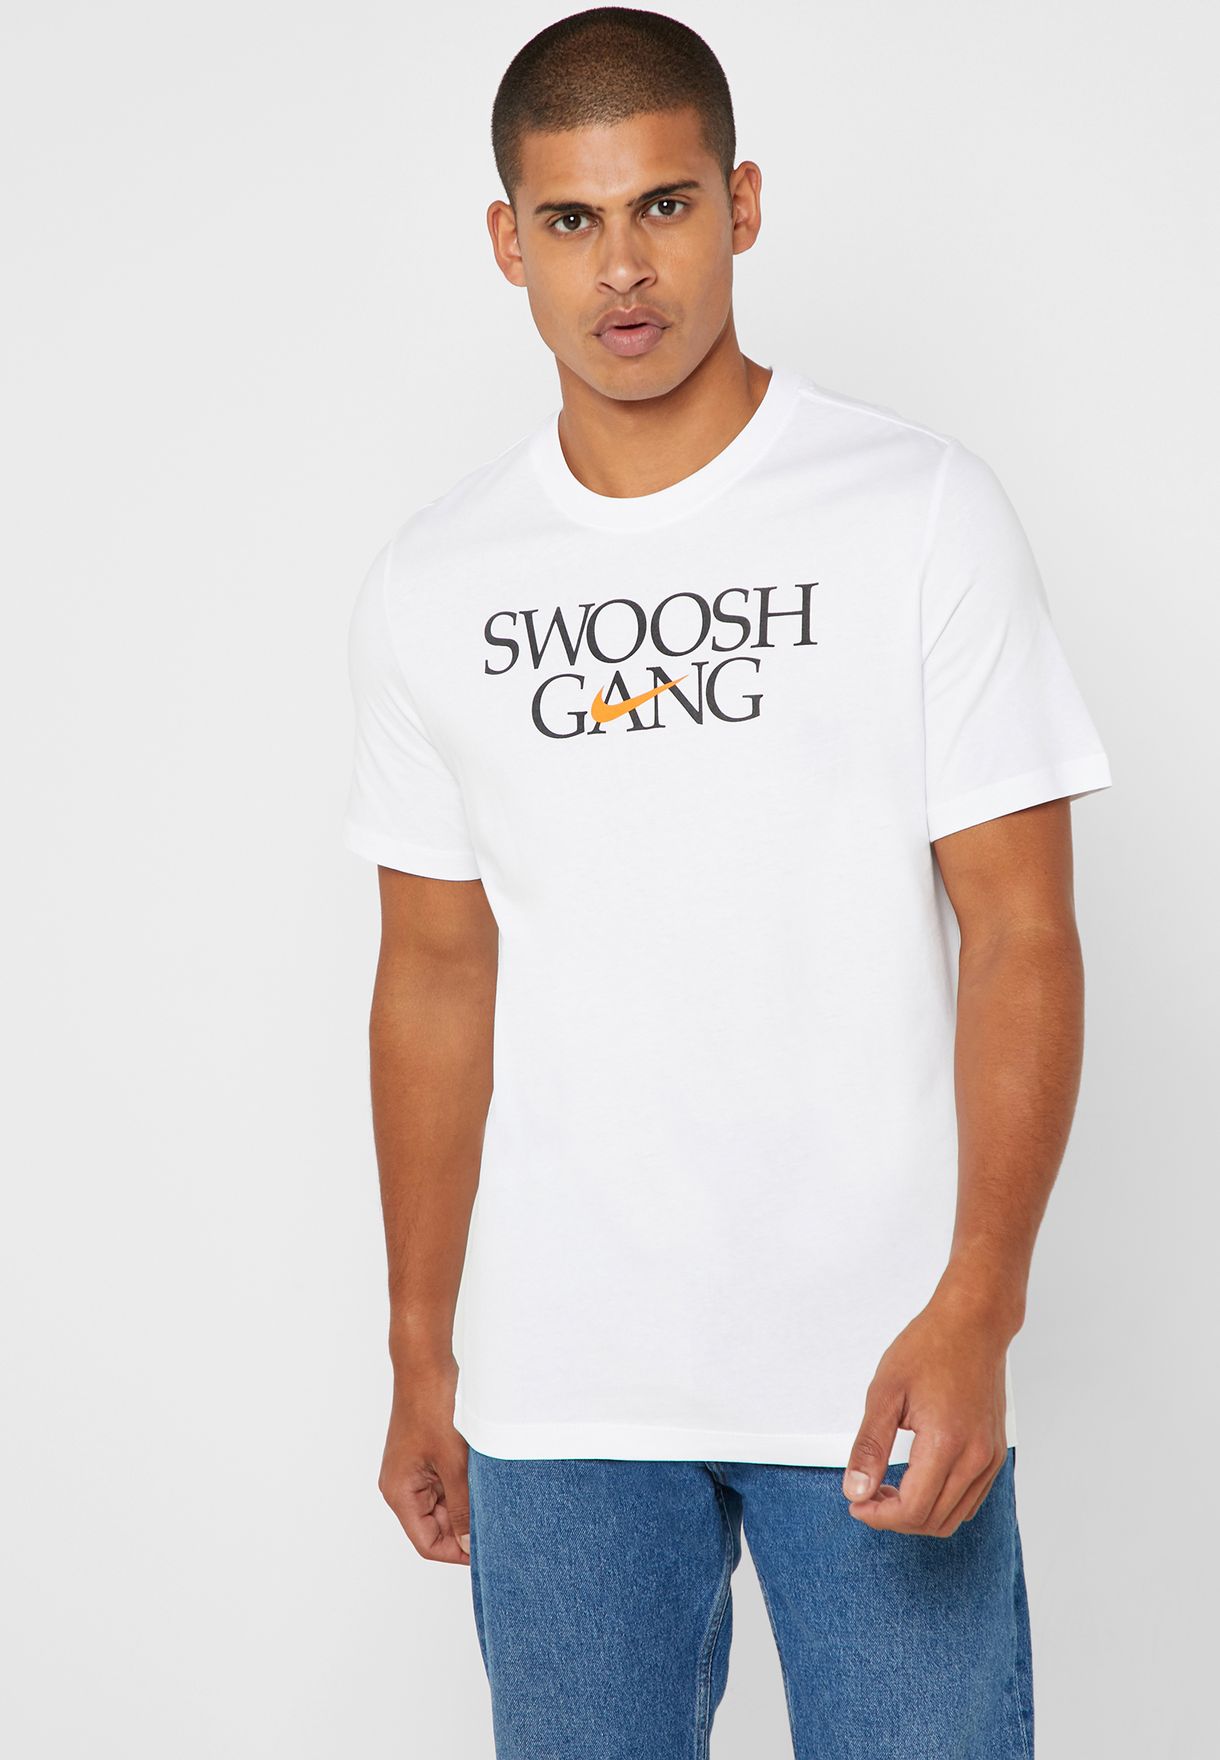 swoosh gang t shirt